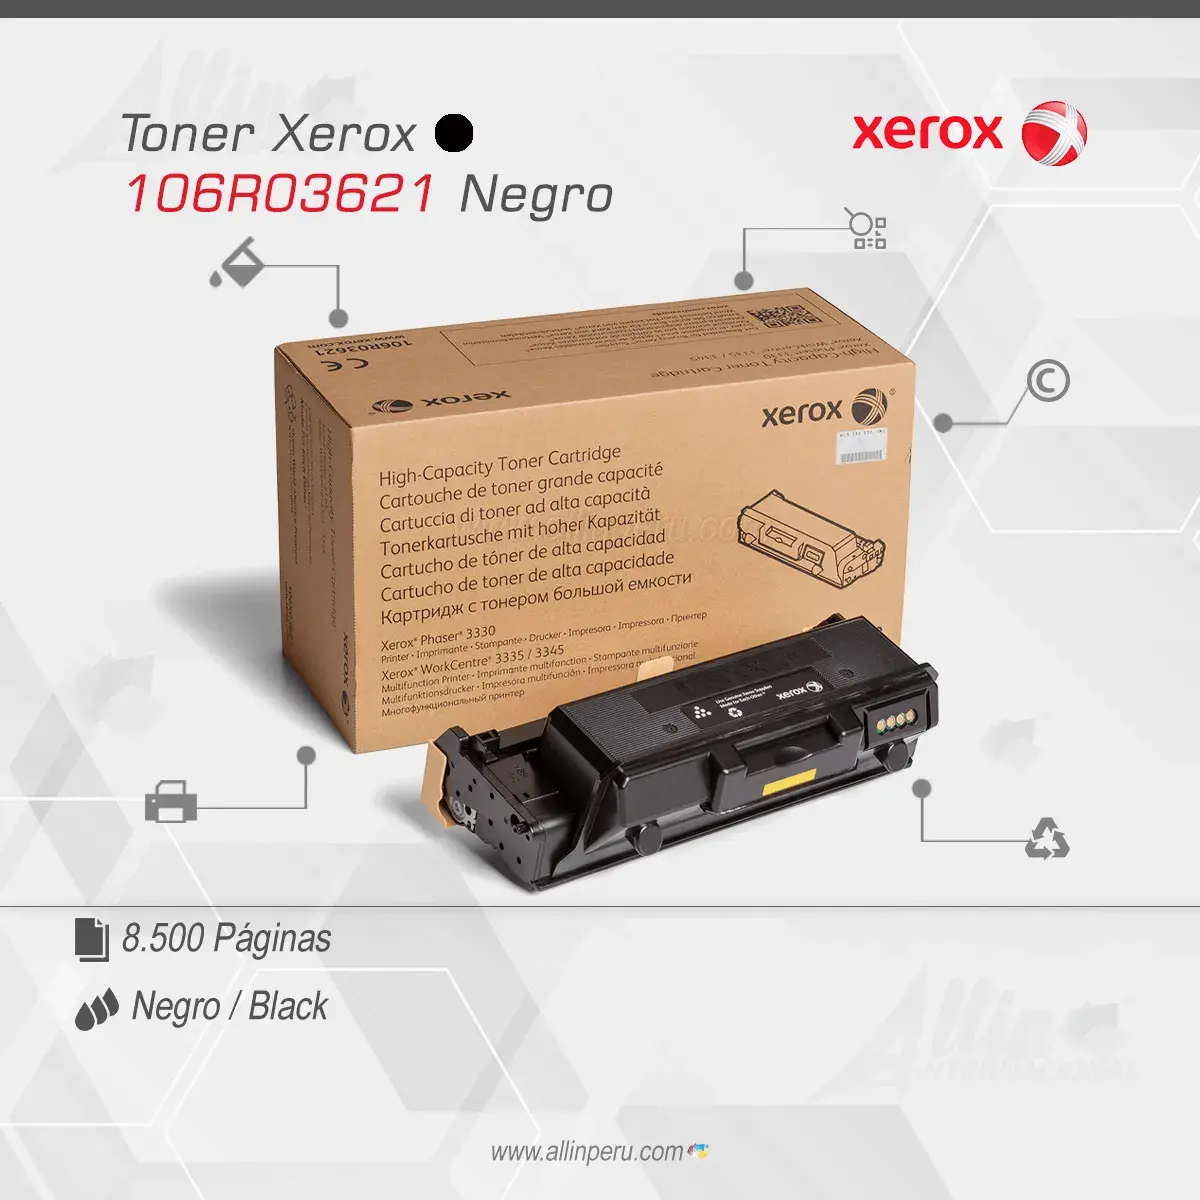 Tóner Xerox 106R03621 este cartucho está hecho para impresoras Phaser 3330